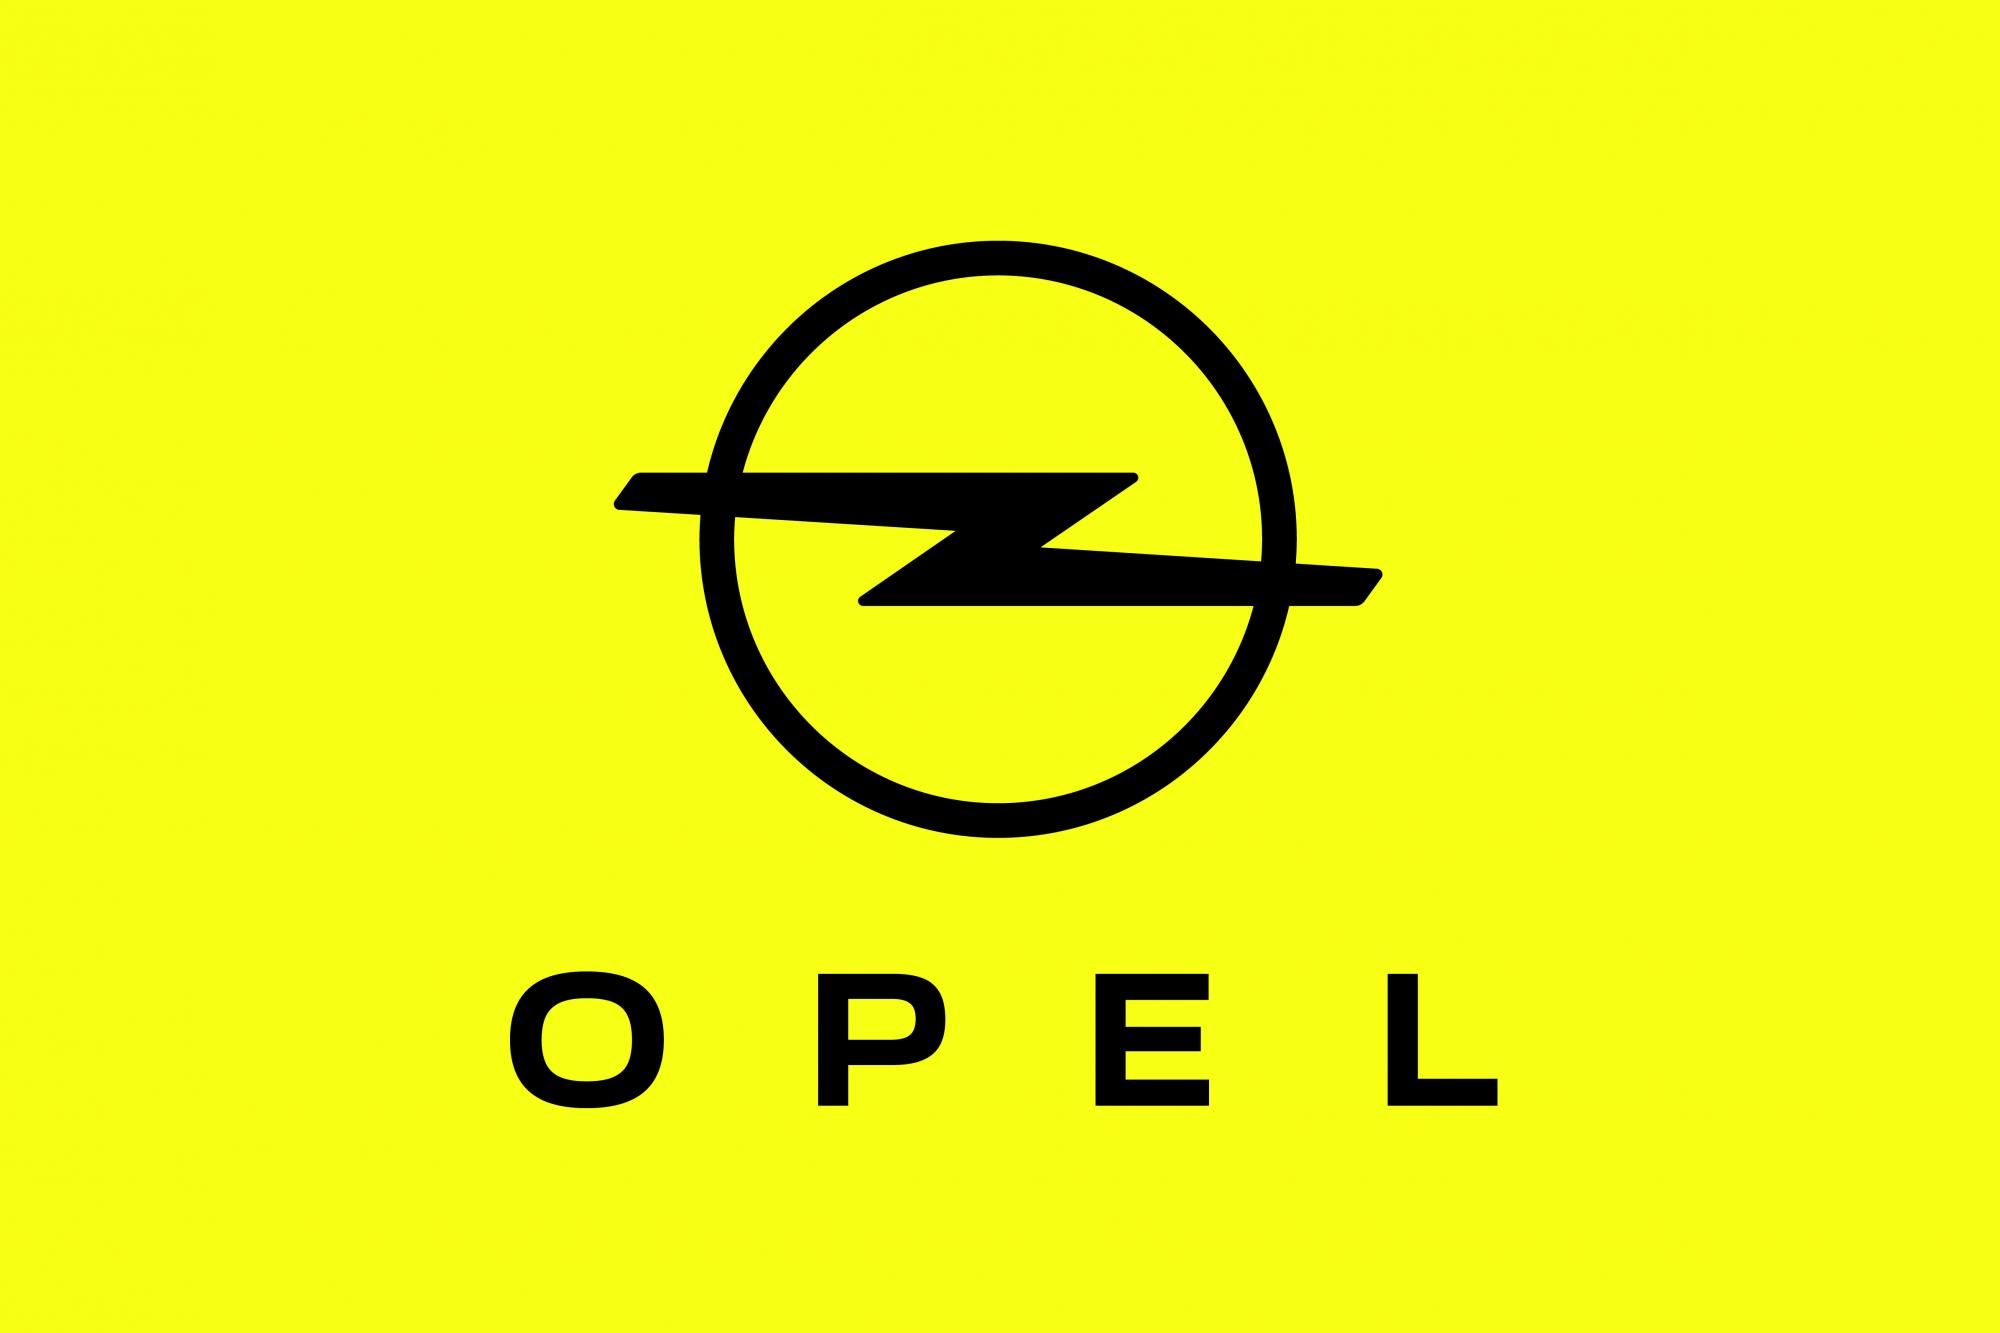 Νέα Εμφάνιση για την Opel